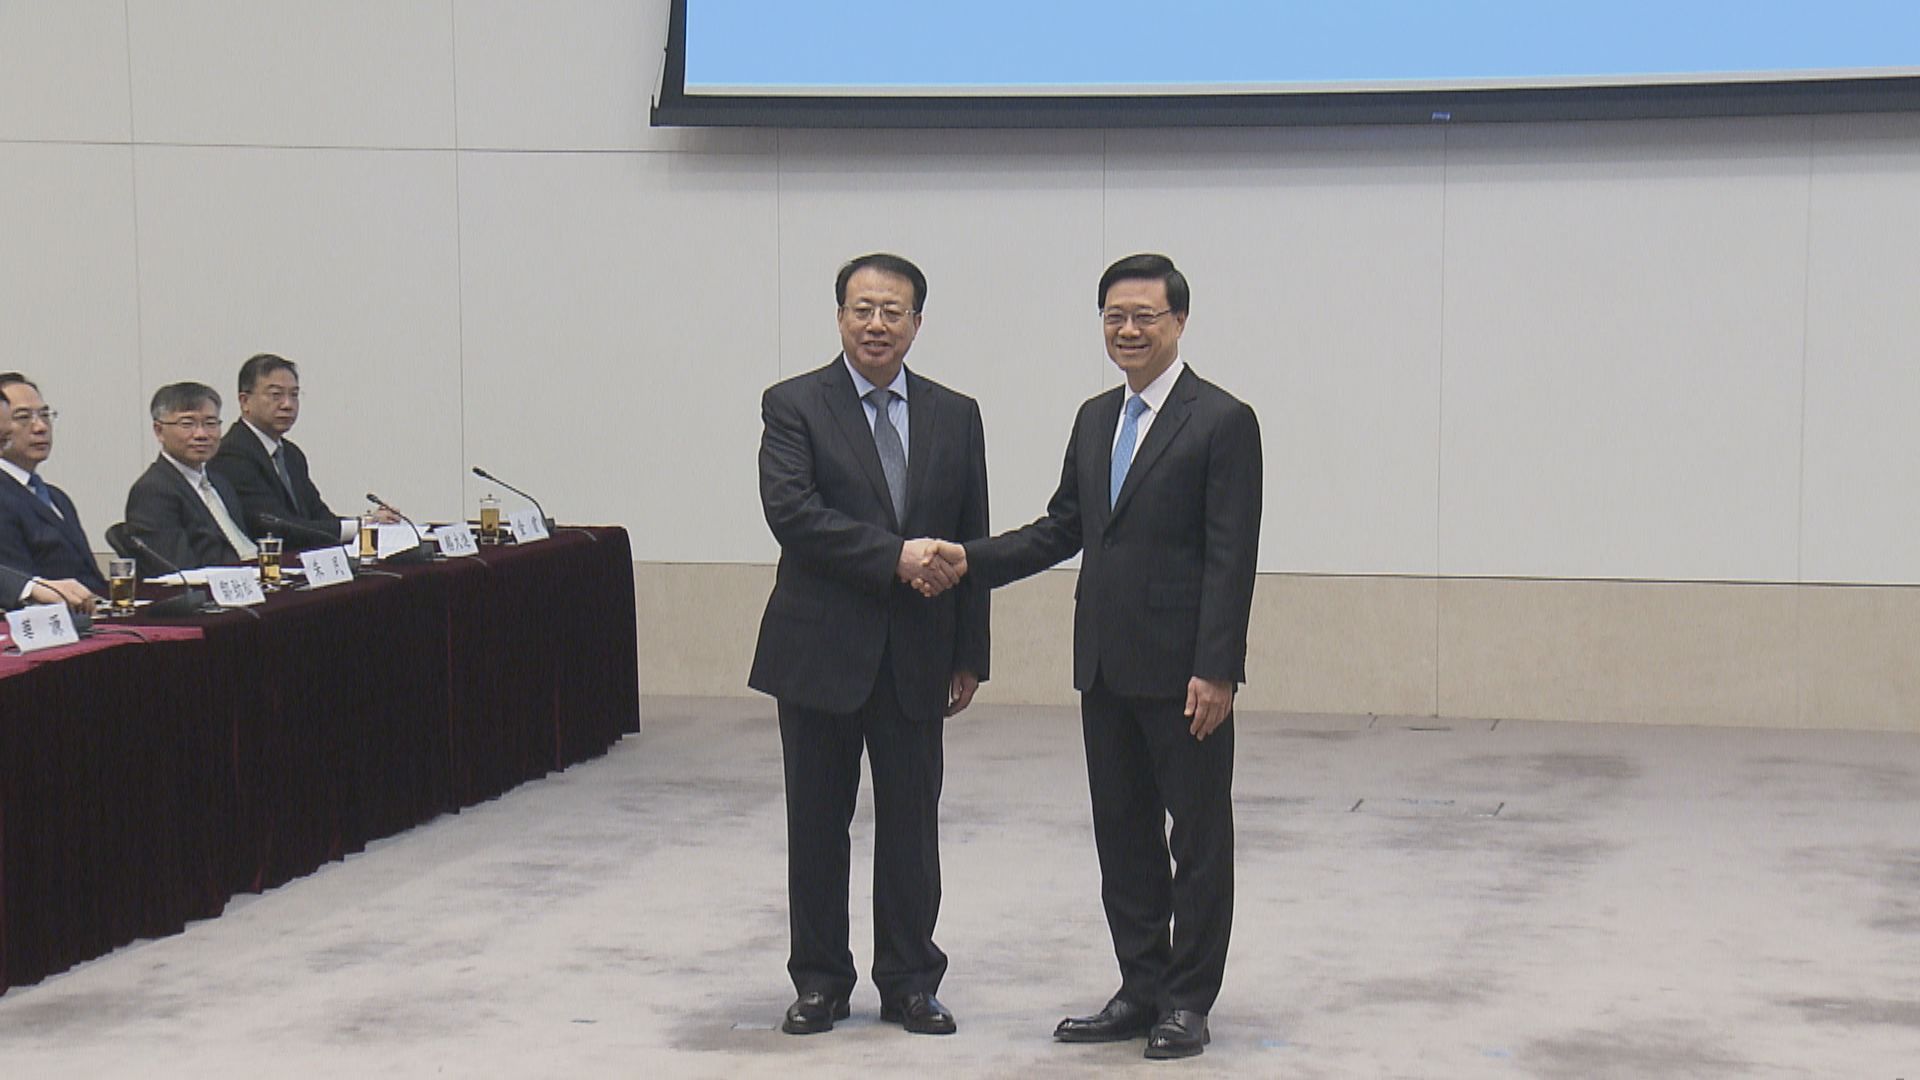 滬港合作會議第六次會議舉行 兩地政府簽署20份合作文件